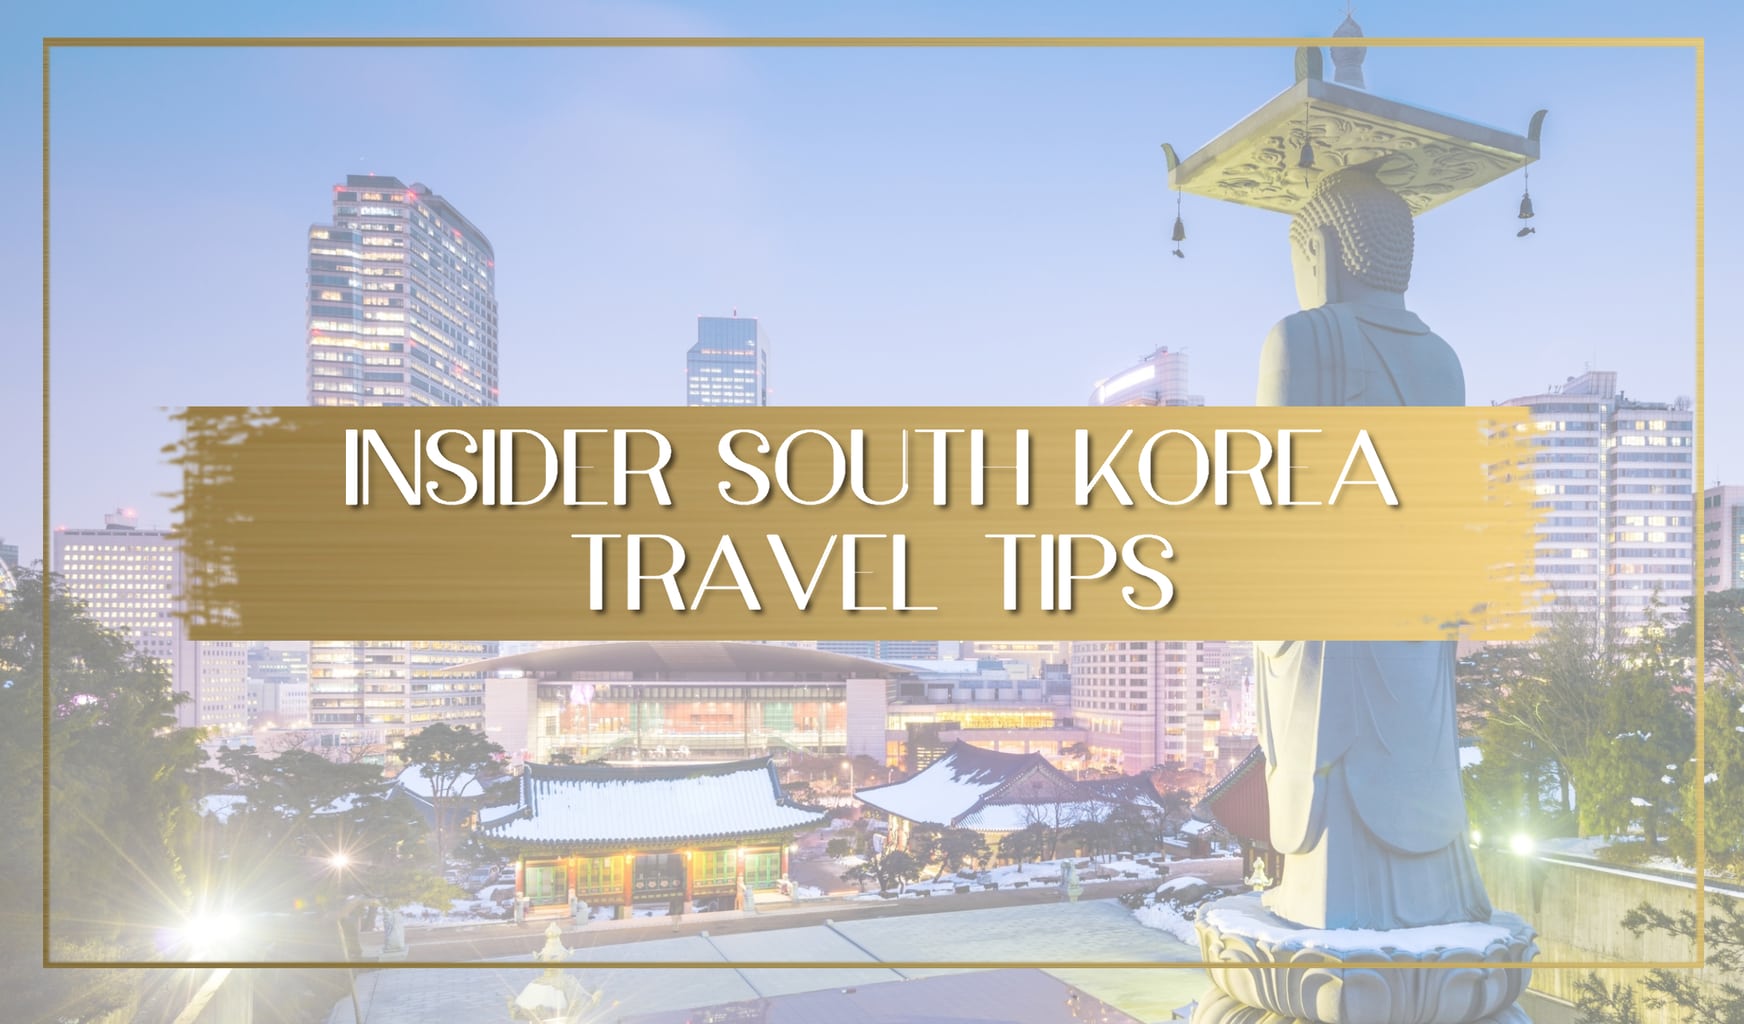 South Korea travel tips main